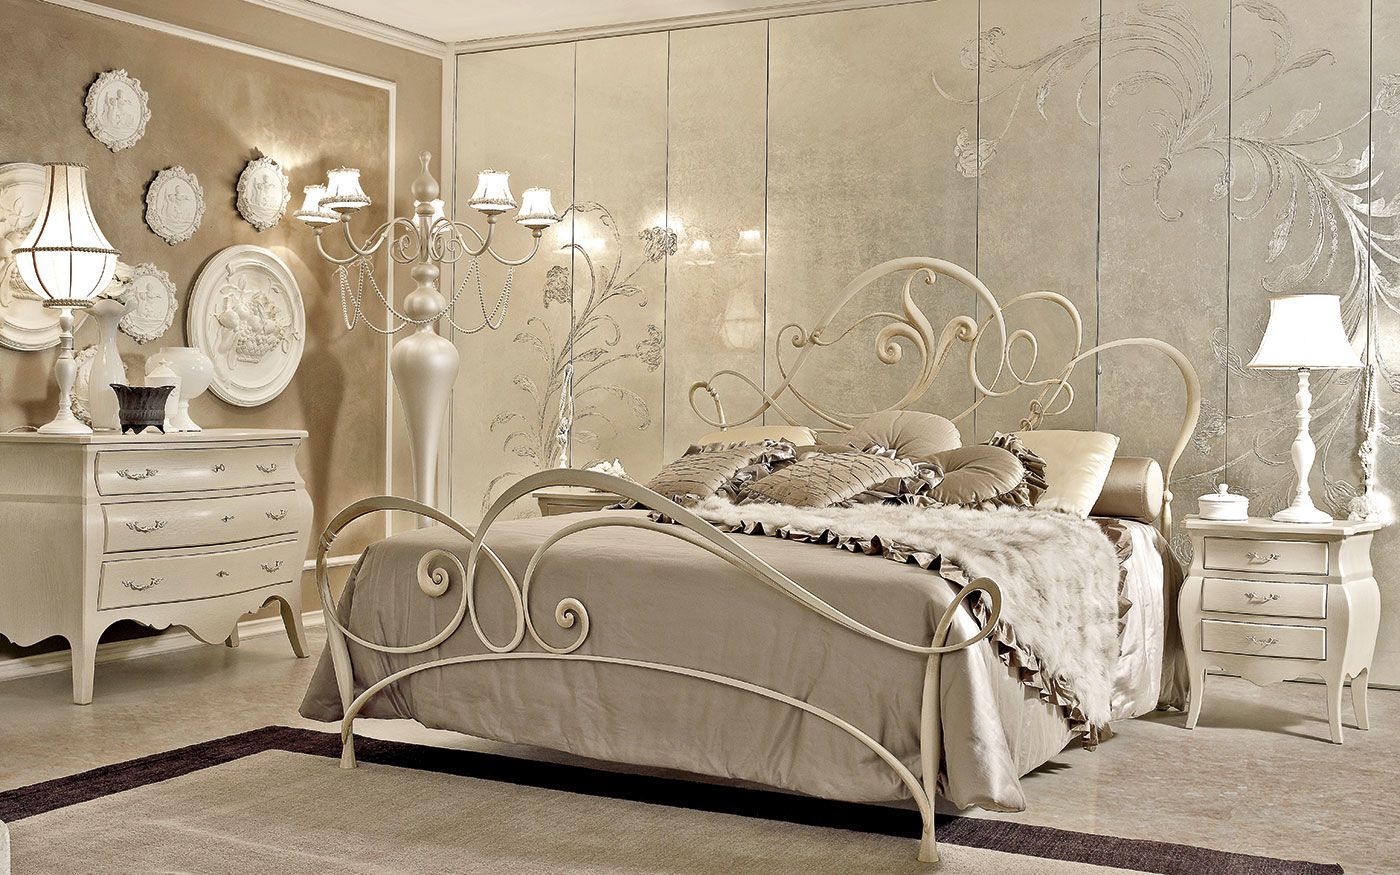 Кованная кровать в интерьере спальни. кованые кровати в интерьере спальни. описание, внешний вид с фото, разнообразие стилей, проекты и оригинальные идеи для дизайна